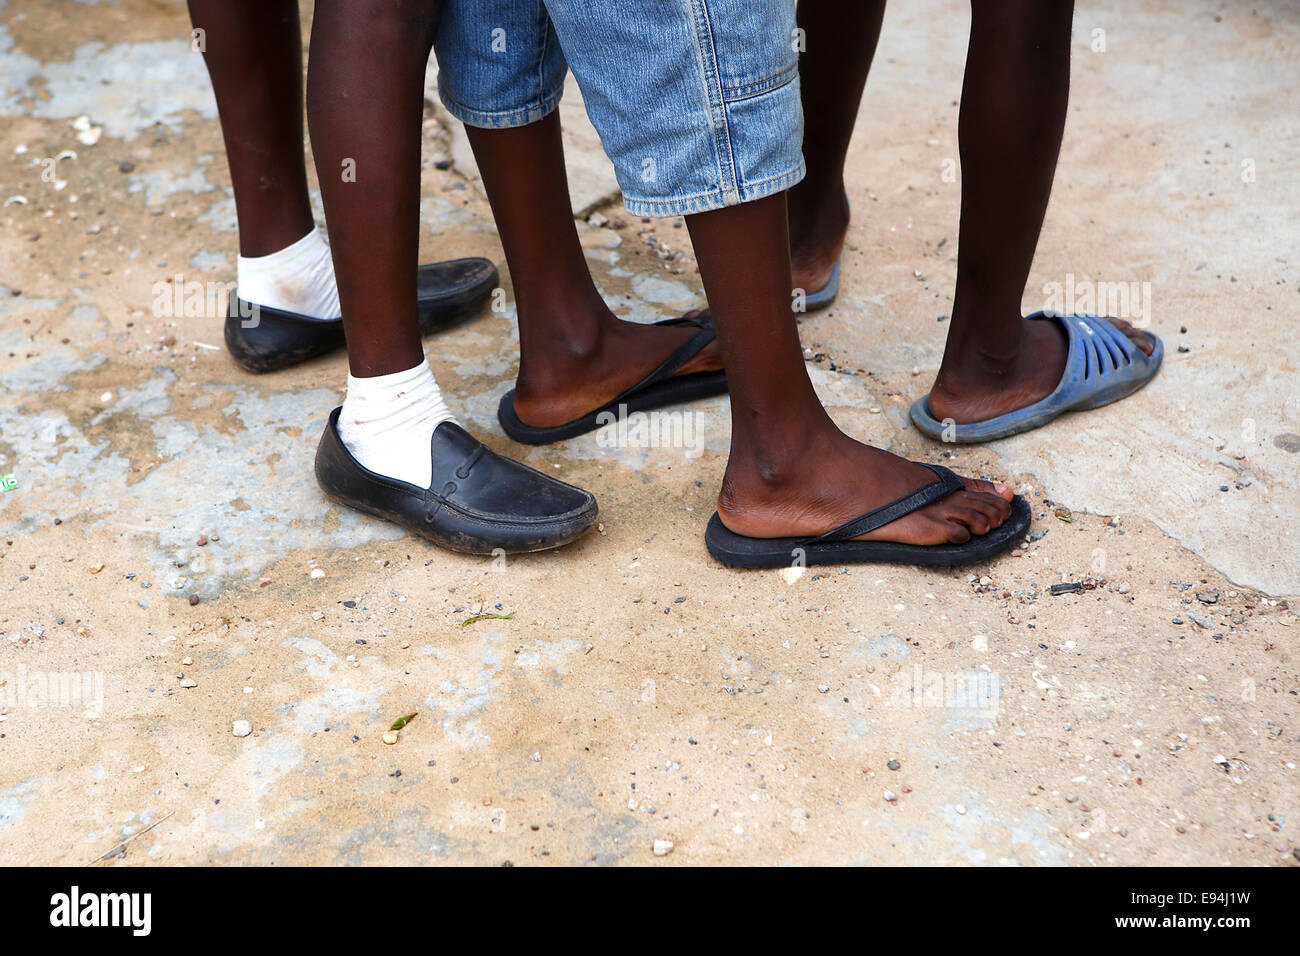 Pieds d'hommes africains dans des chaussures en attente sur un fond pierreux Banque D'Images